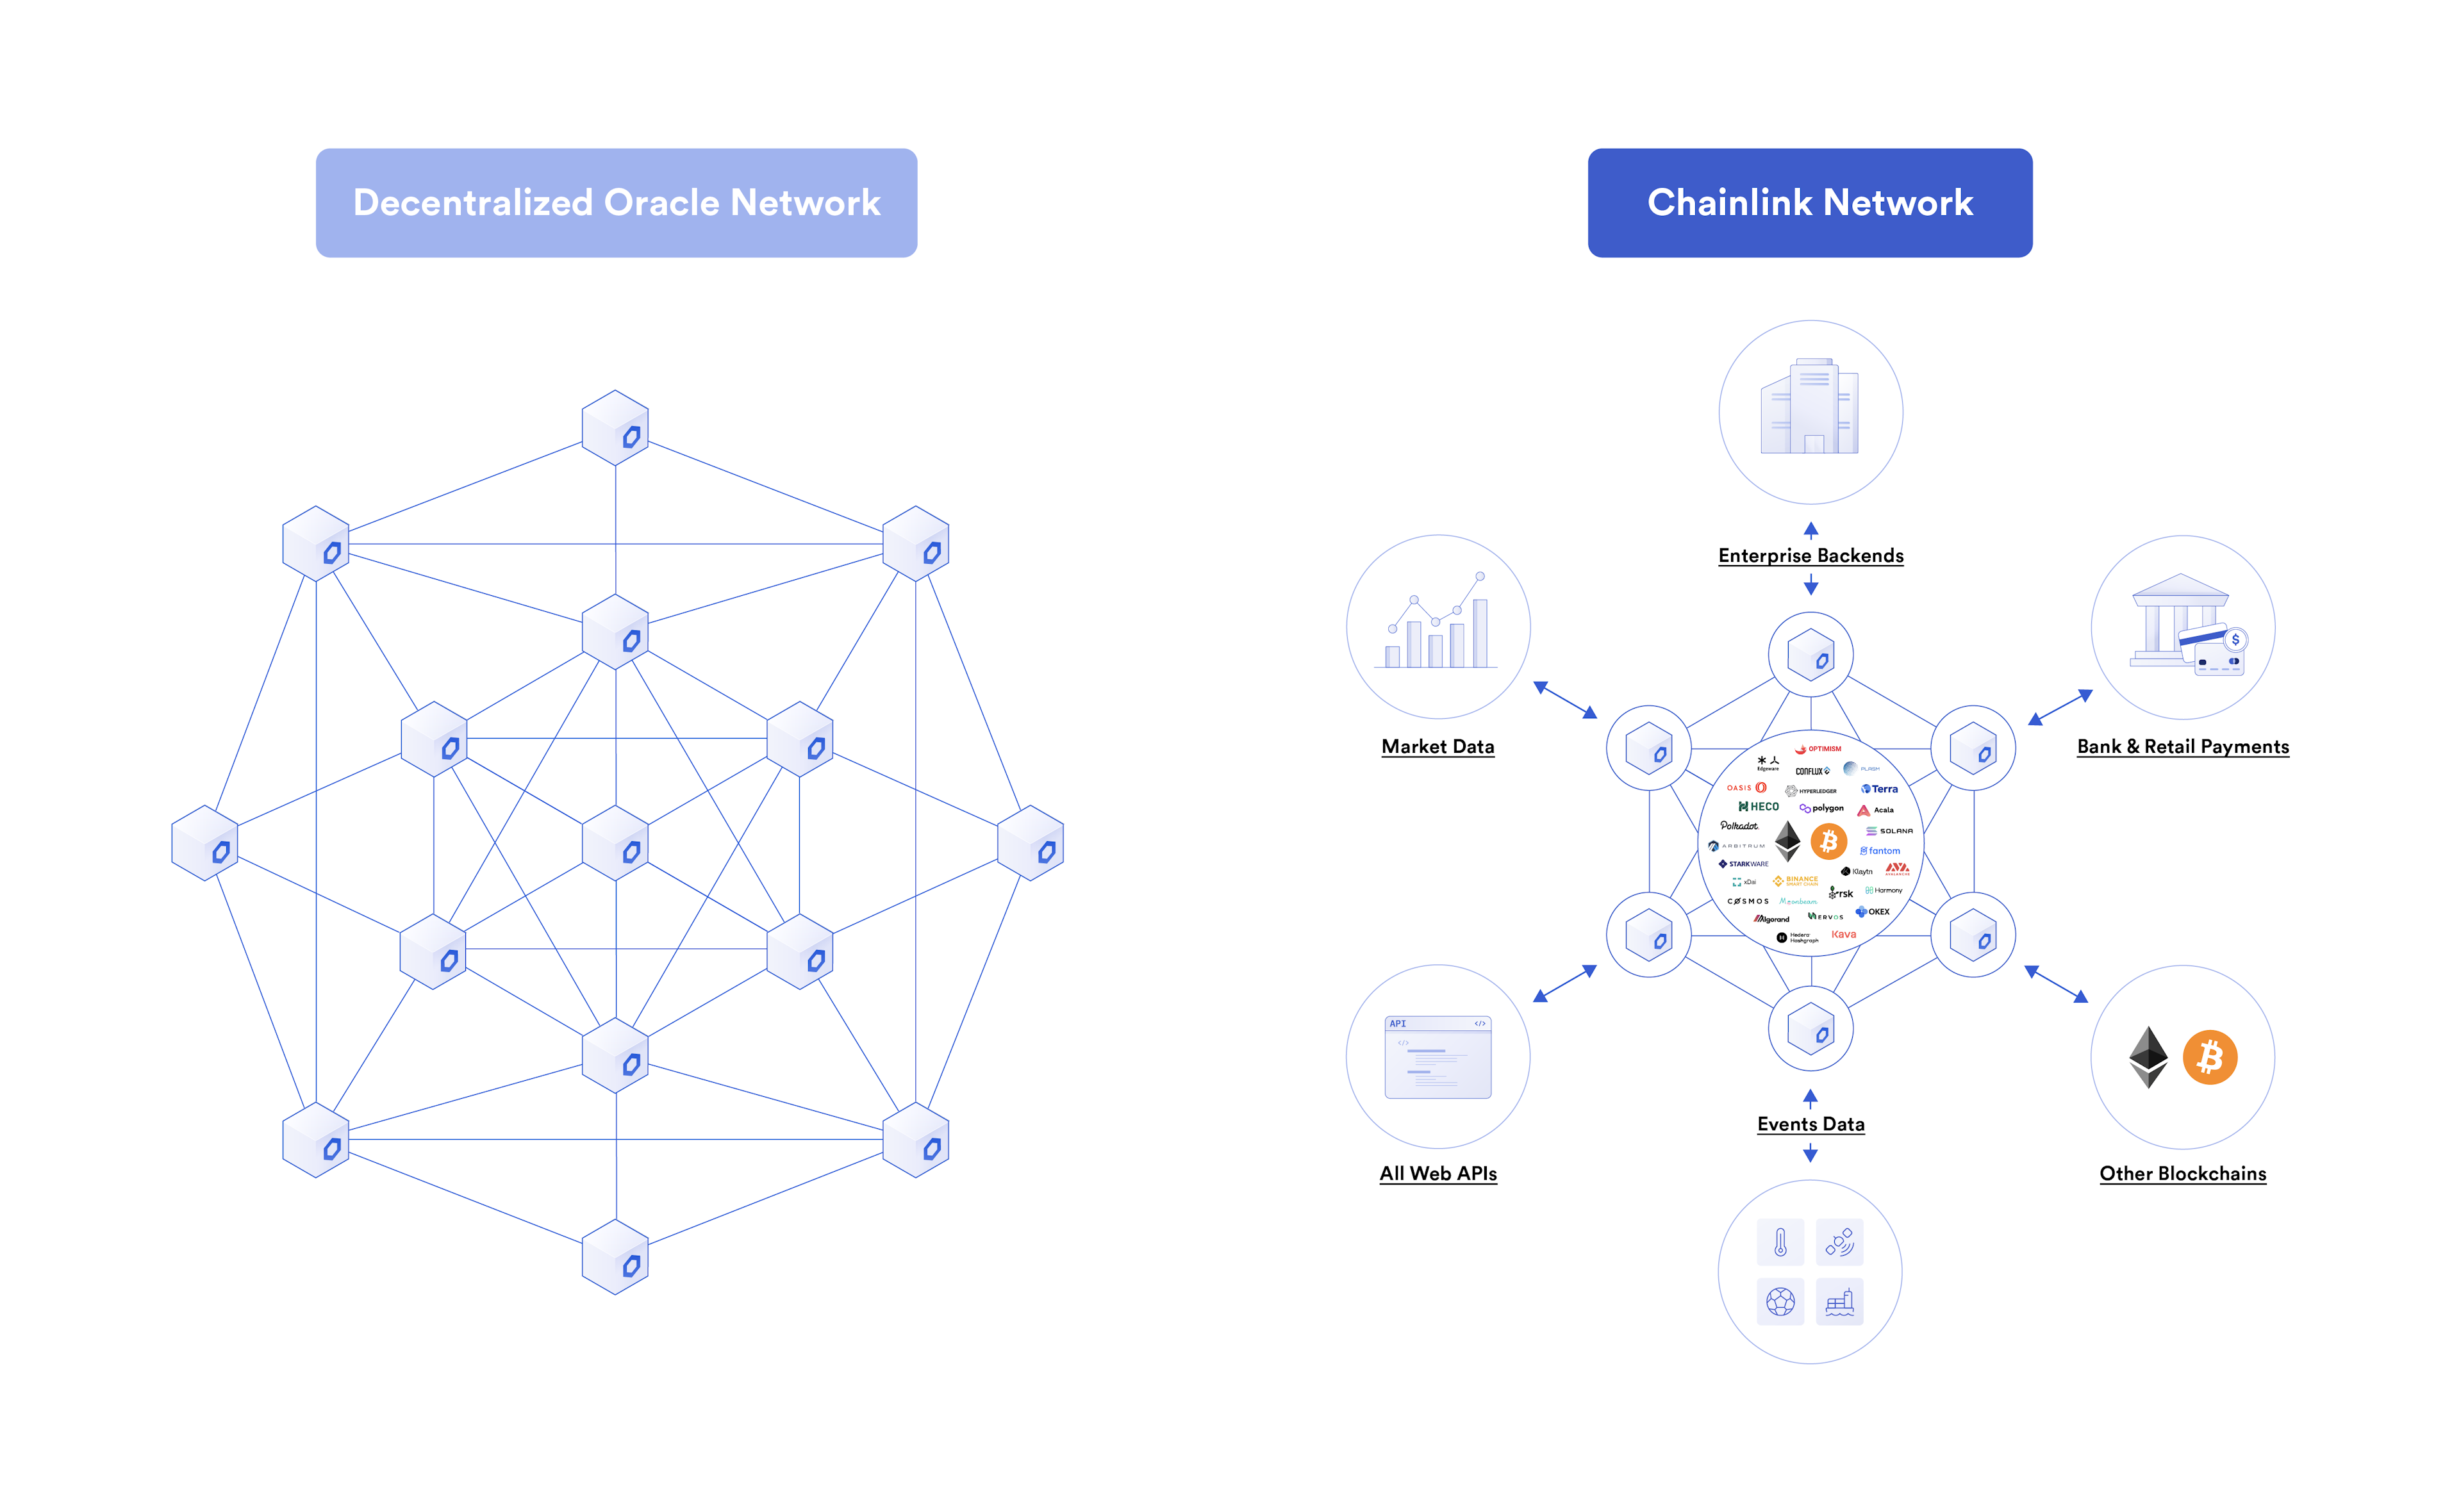 Chainlink去中心化的预言机网络可以让任何区块链上的智能合约与任何外部系统或资源实现双向交互，并在过程中保障安全性、可靠性和准确性。